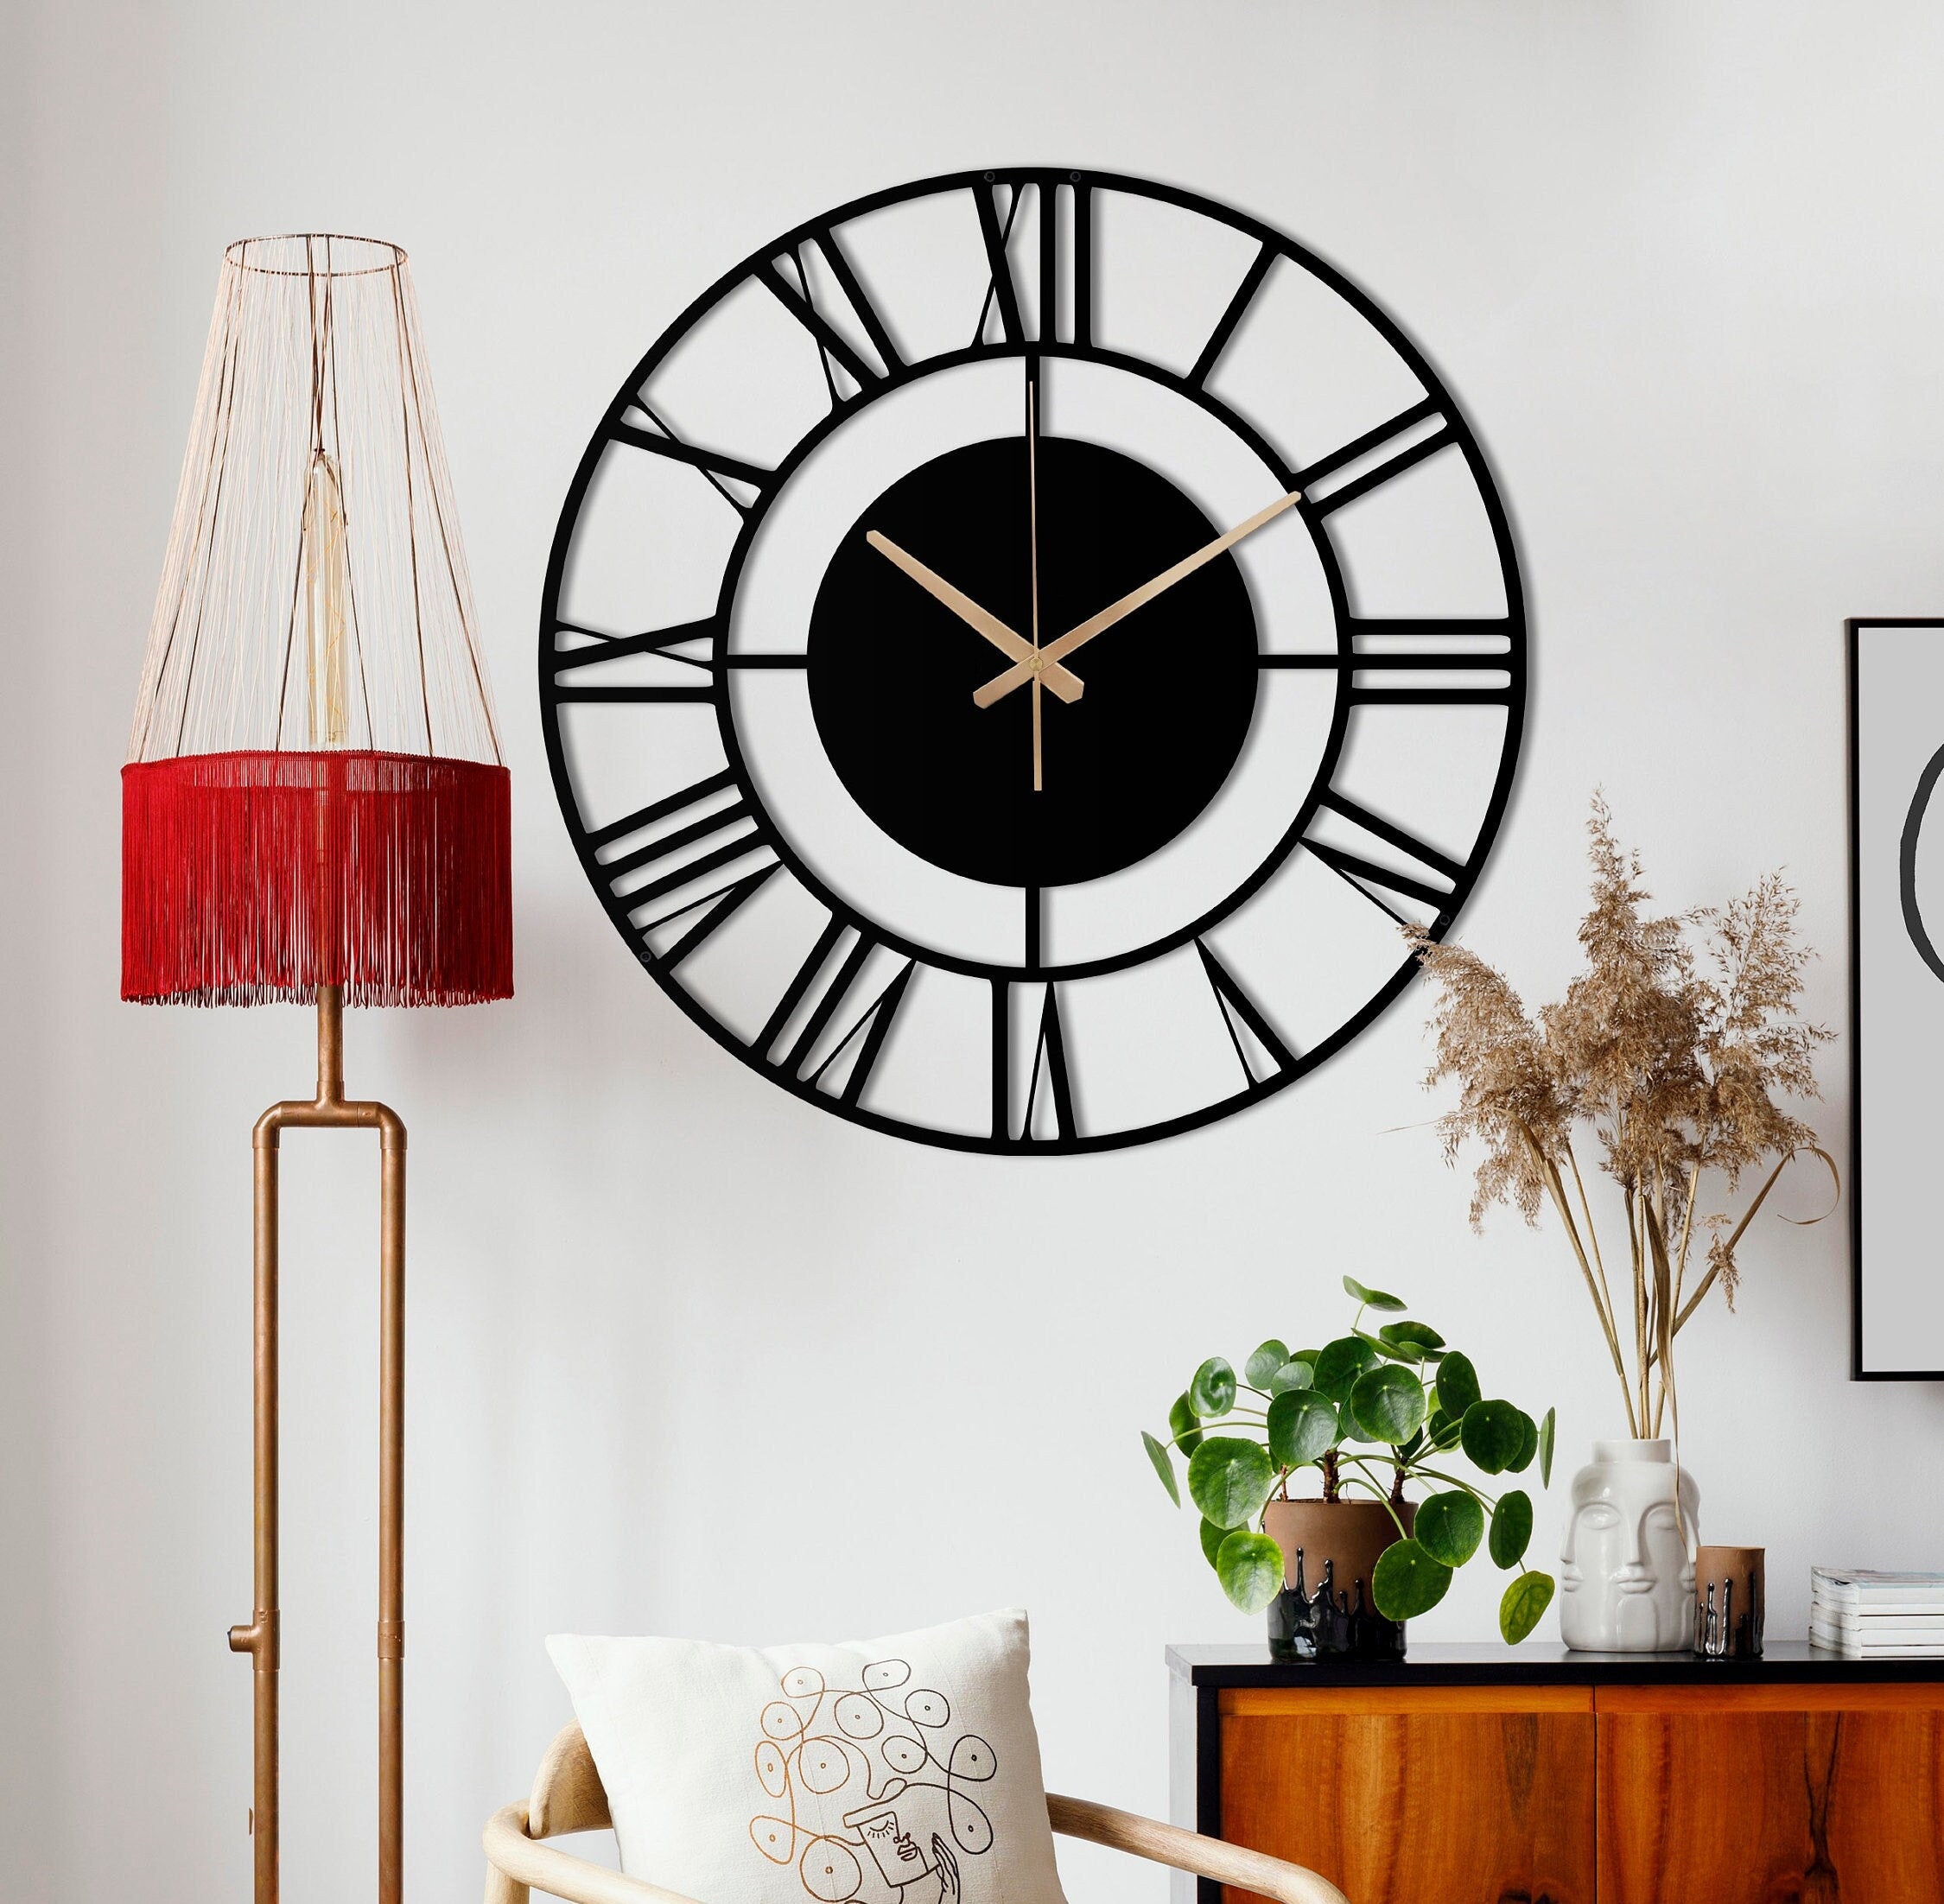 Unique Wall Clock, Silent Wall Clock, Small Metal Wall Clock, Black Wall Clock, Oversized Wall Clock, Retro Wall Clock, Laser Cut Clock